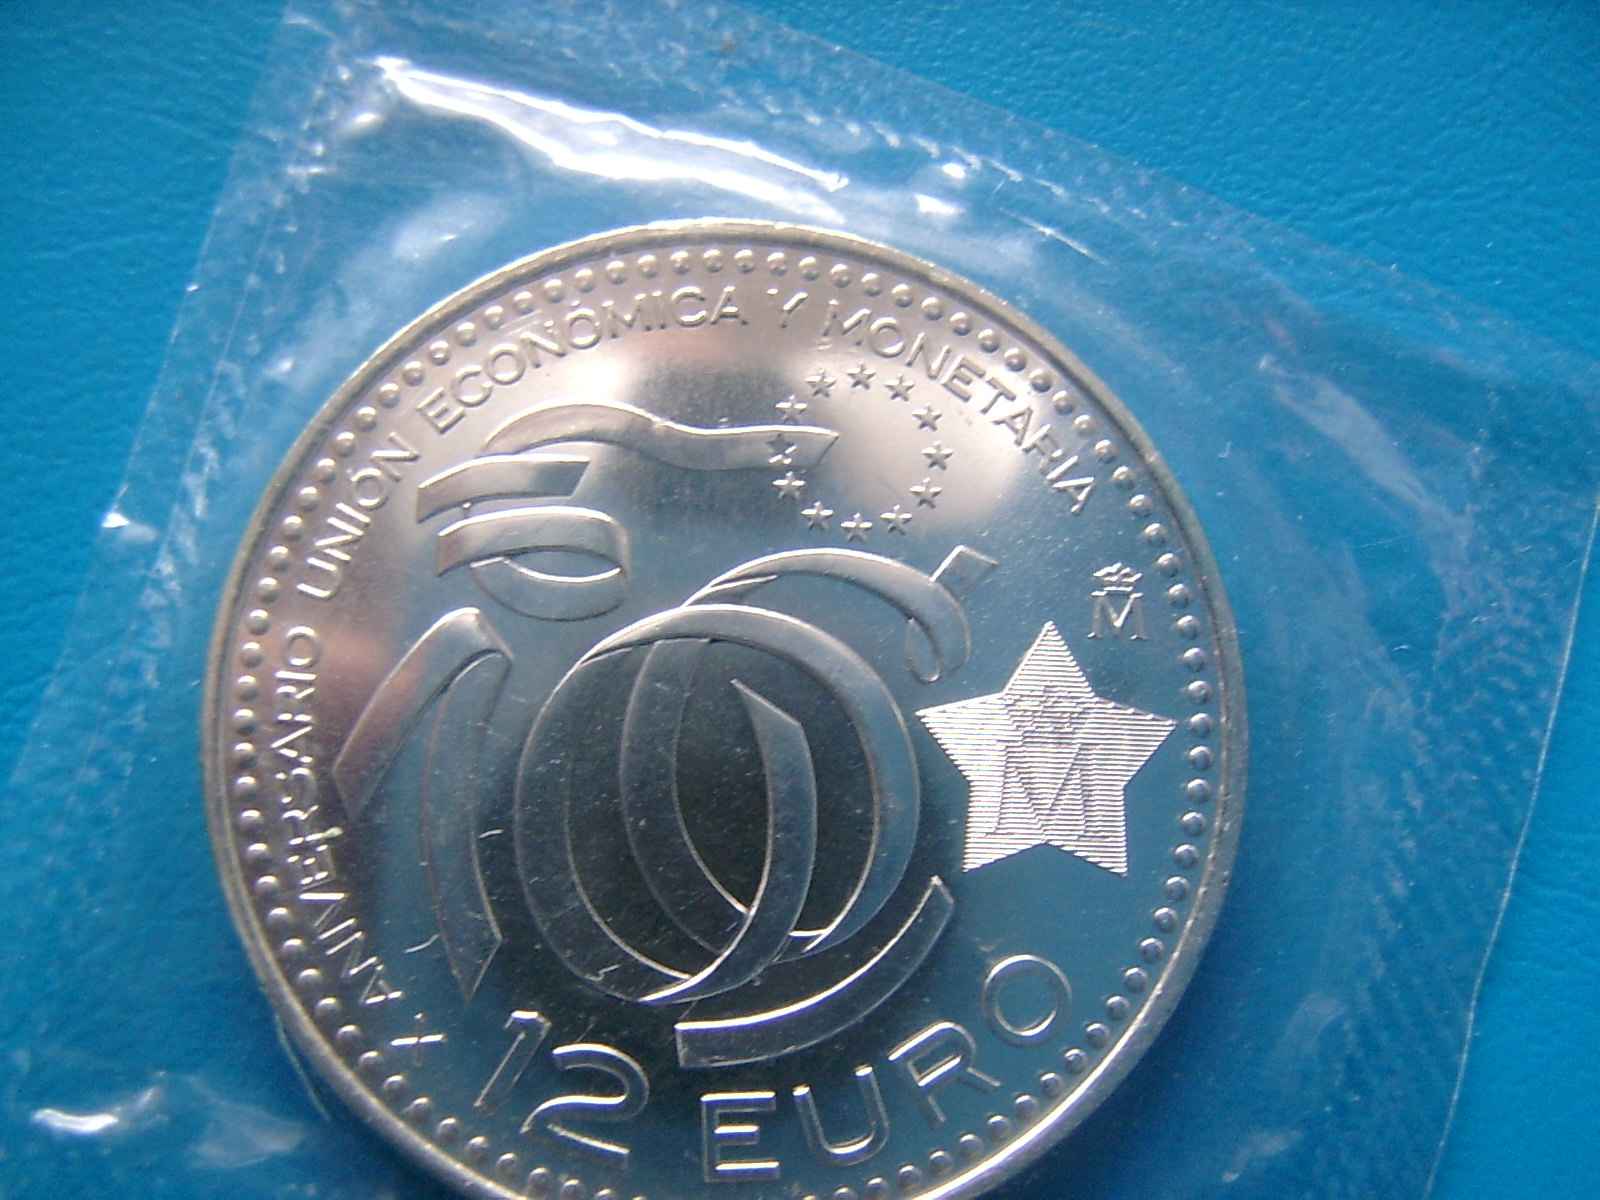  Spanien - 12 Euro Silbermünze 2009 - stgl. national Gedenkmünze in OVP   